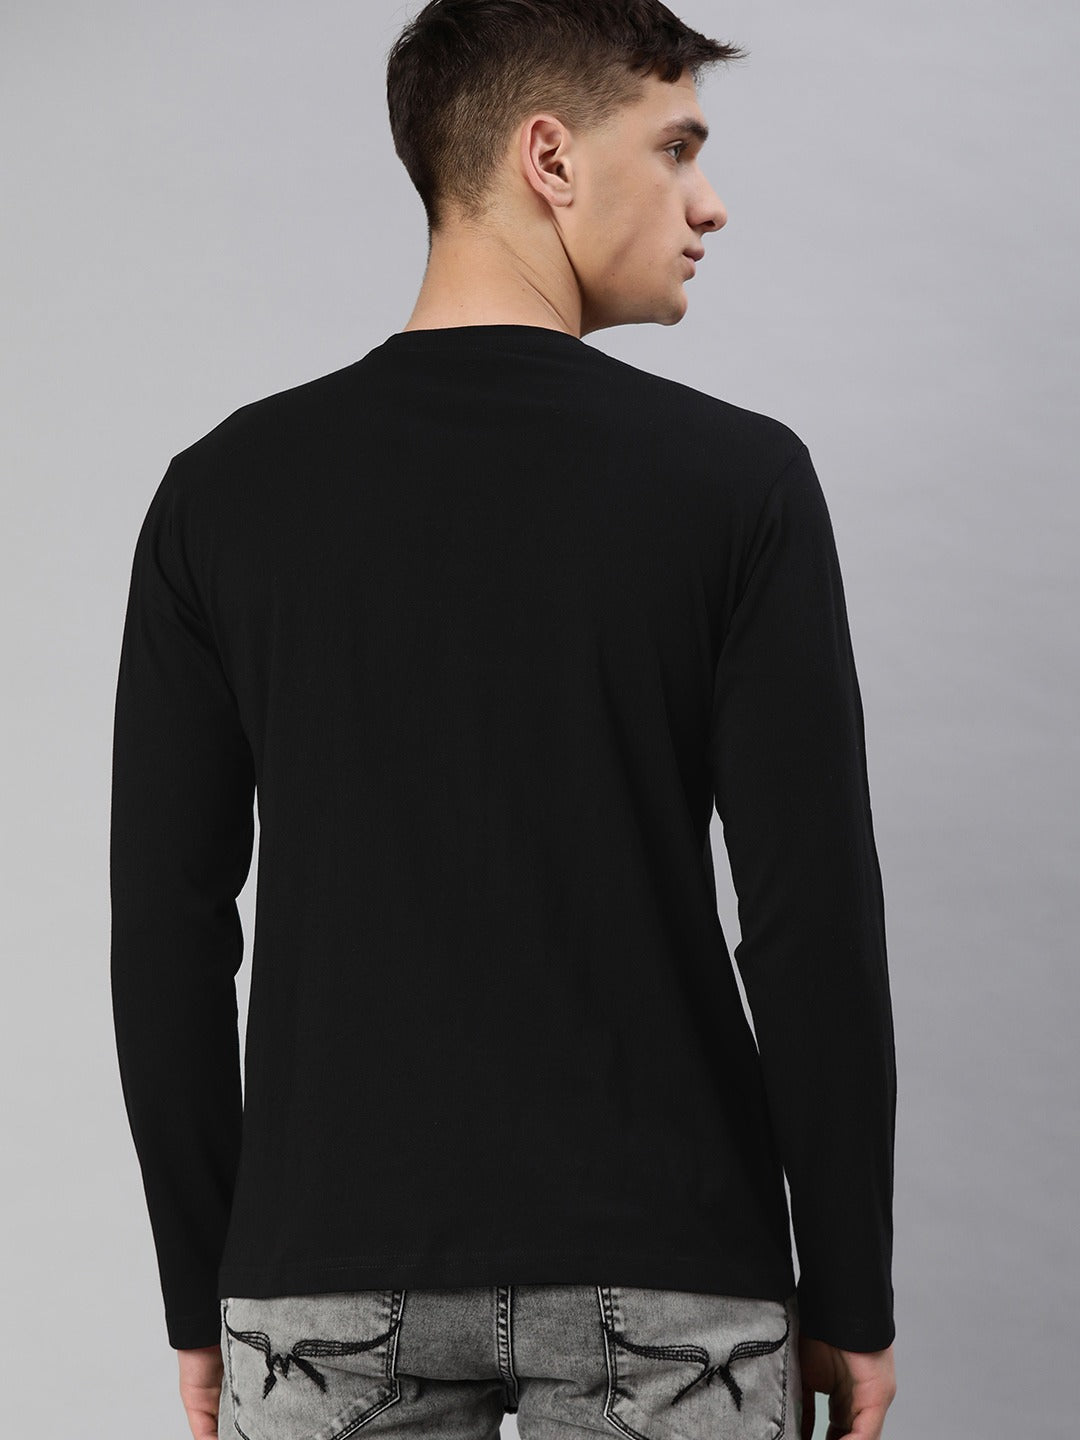 Buy Plain Black Full Sleeves T-Shirts Online For Men in India | Be Awara